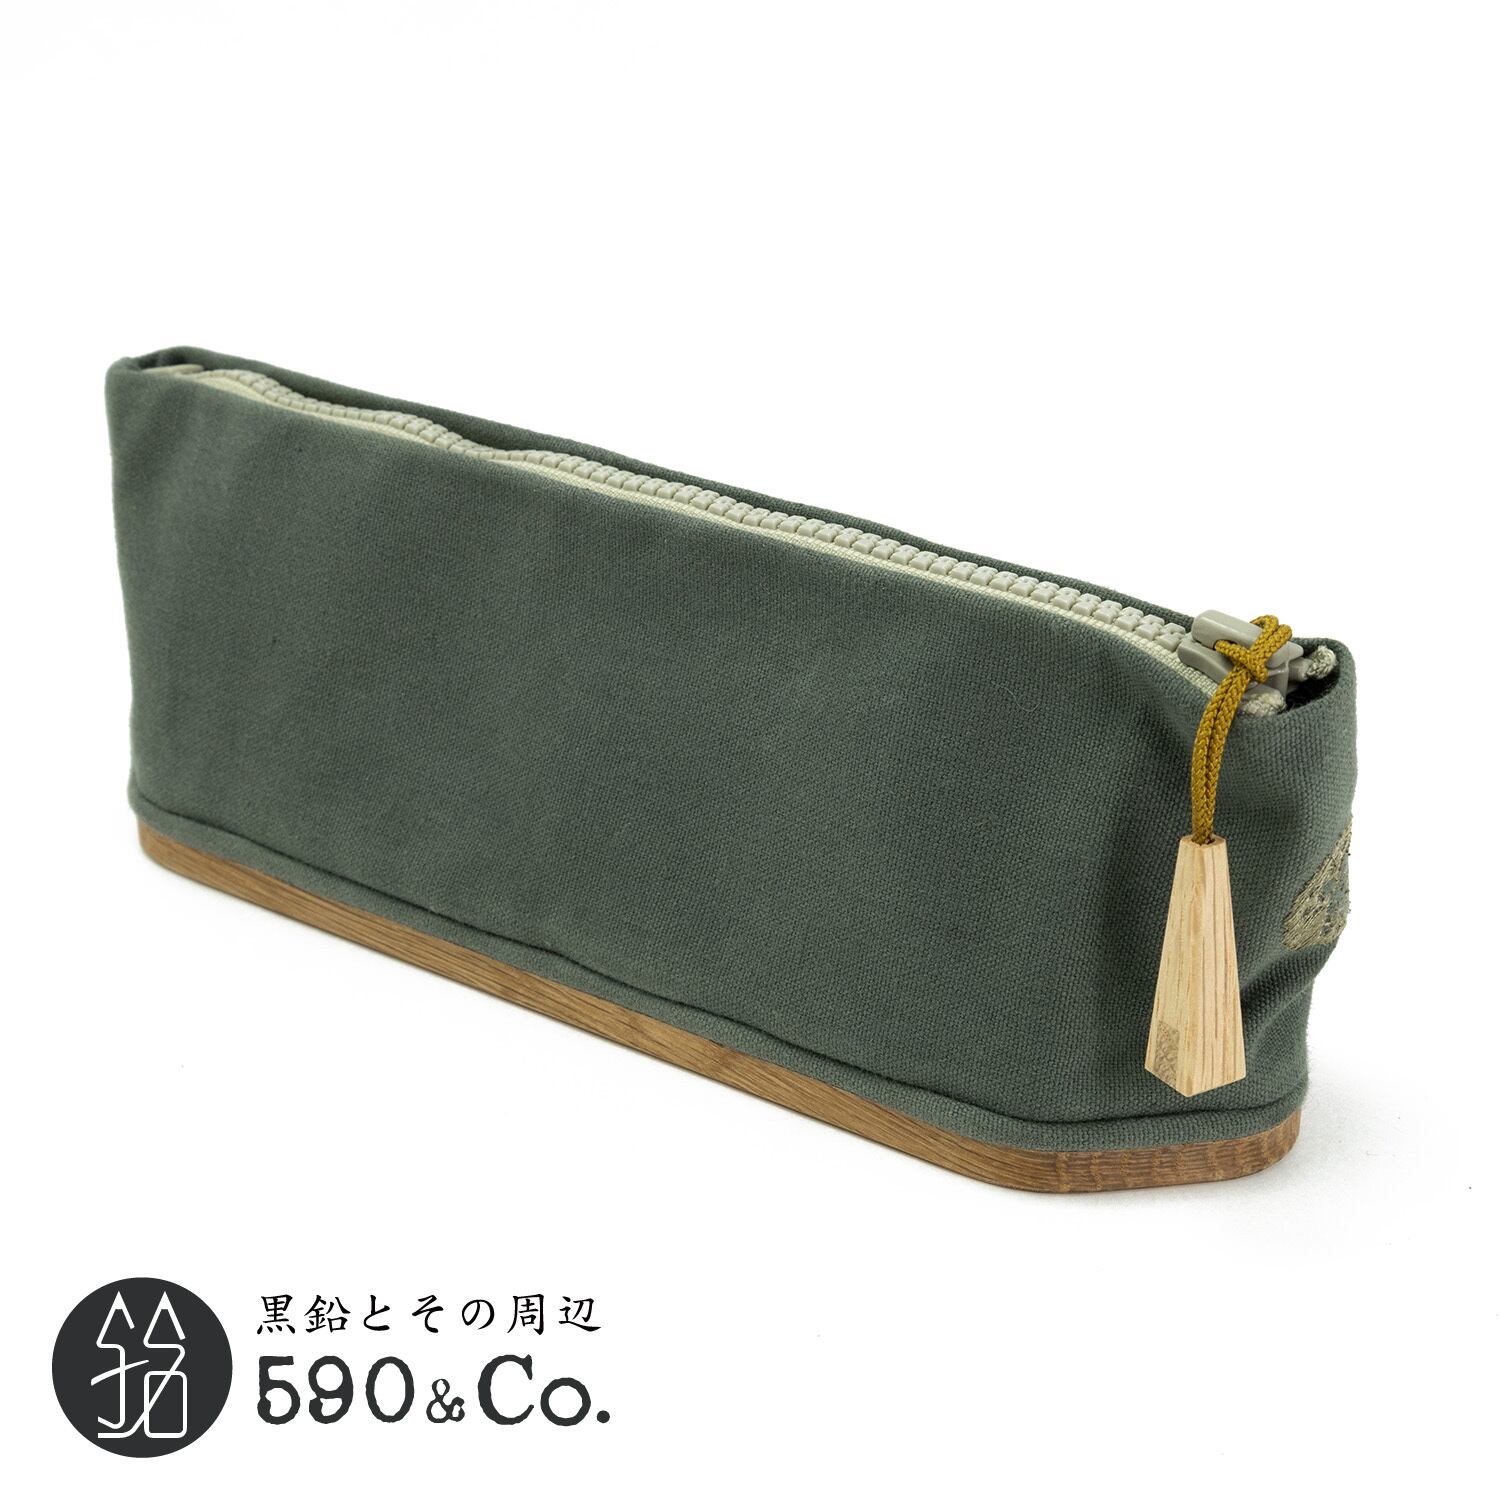 【キナリ木工所】pencase 79 canvas × wood S (オリーブドラブ) 590Co.